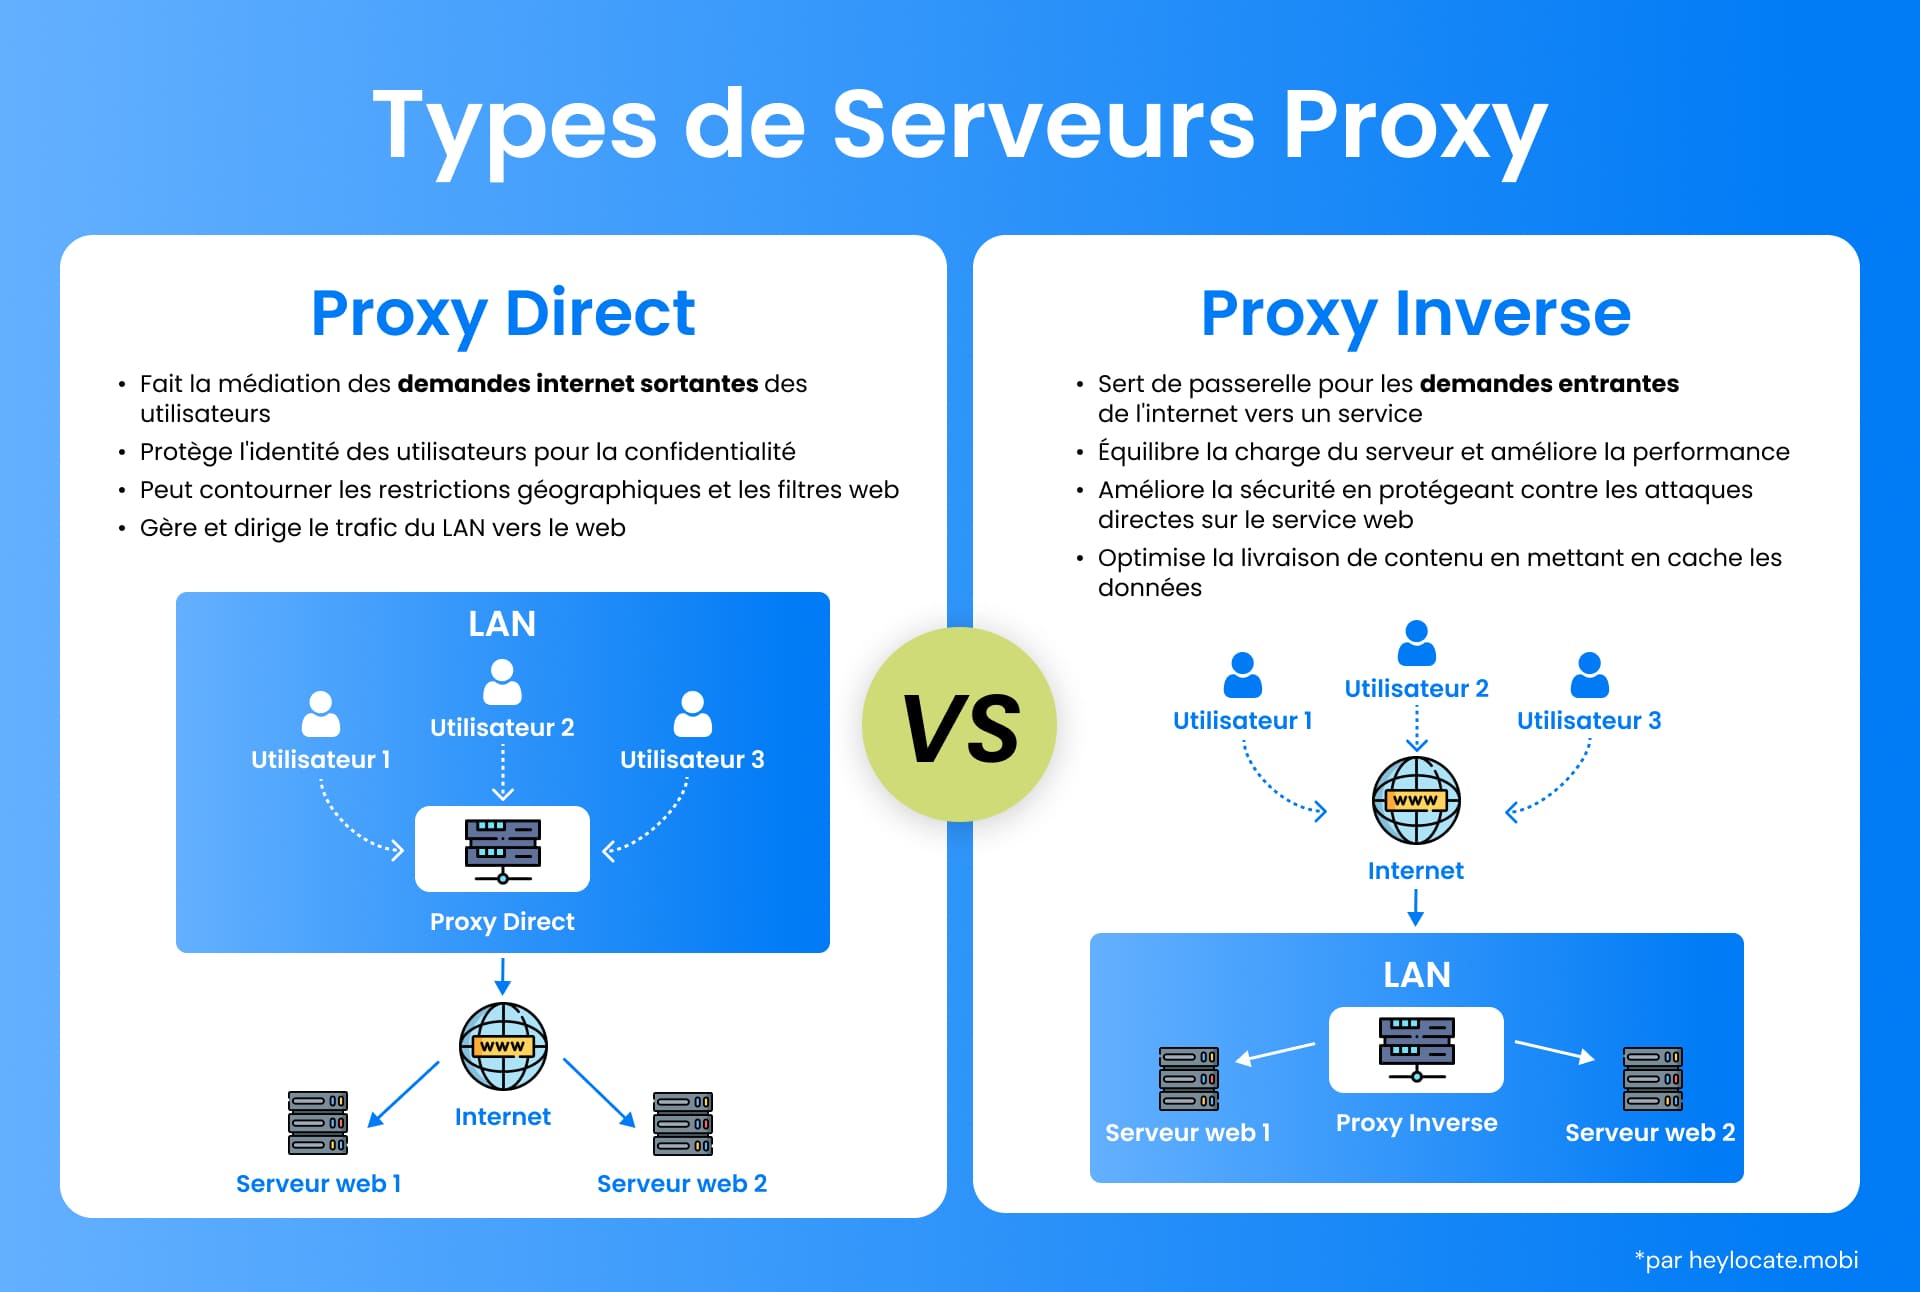 Comparaison visuelle entre les serveurs mandataires (forward proxy) et les serveurs mandataires (reverse proxy), illustrant leurs différents rôles dans l'architecture du réseau et la communication sur l'internet.